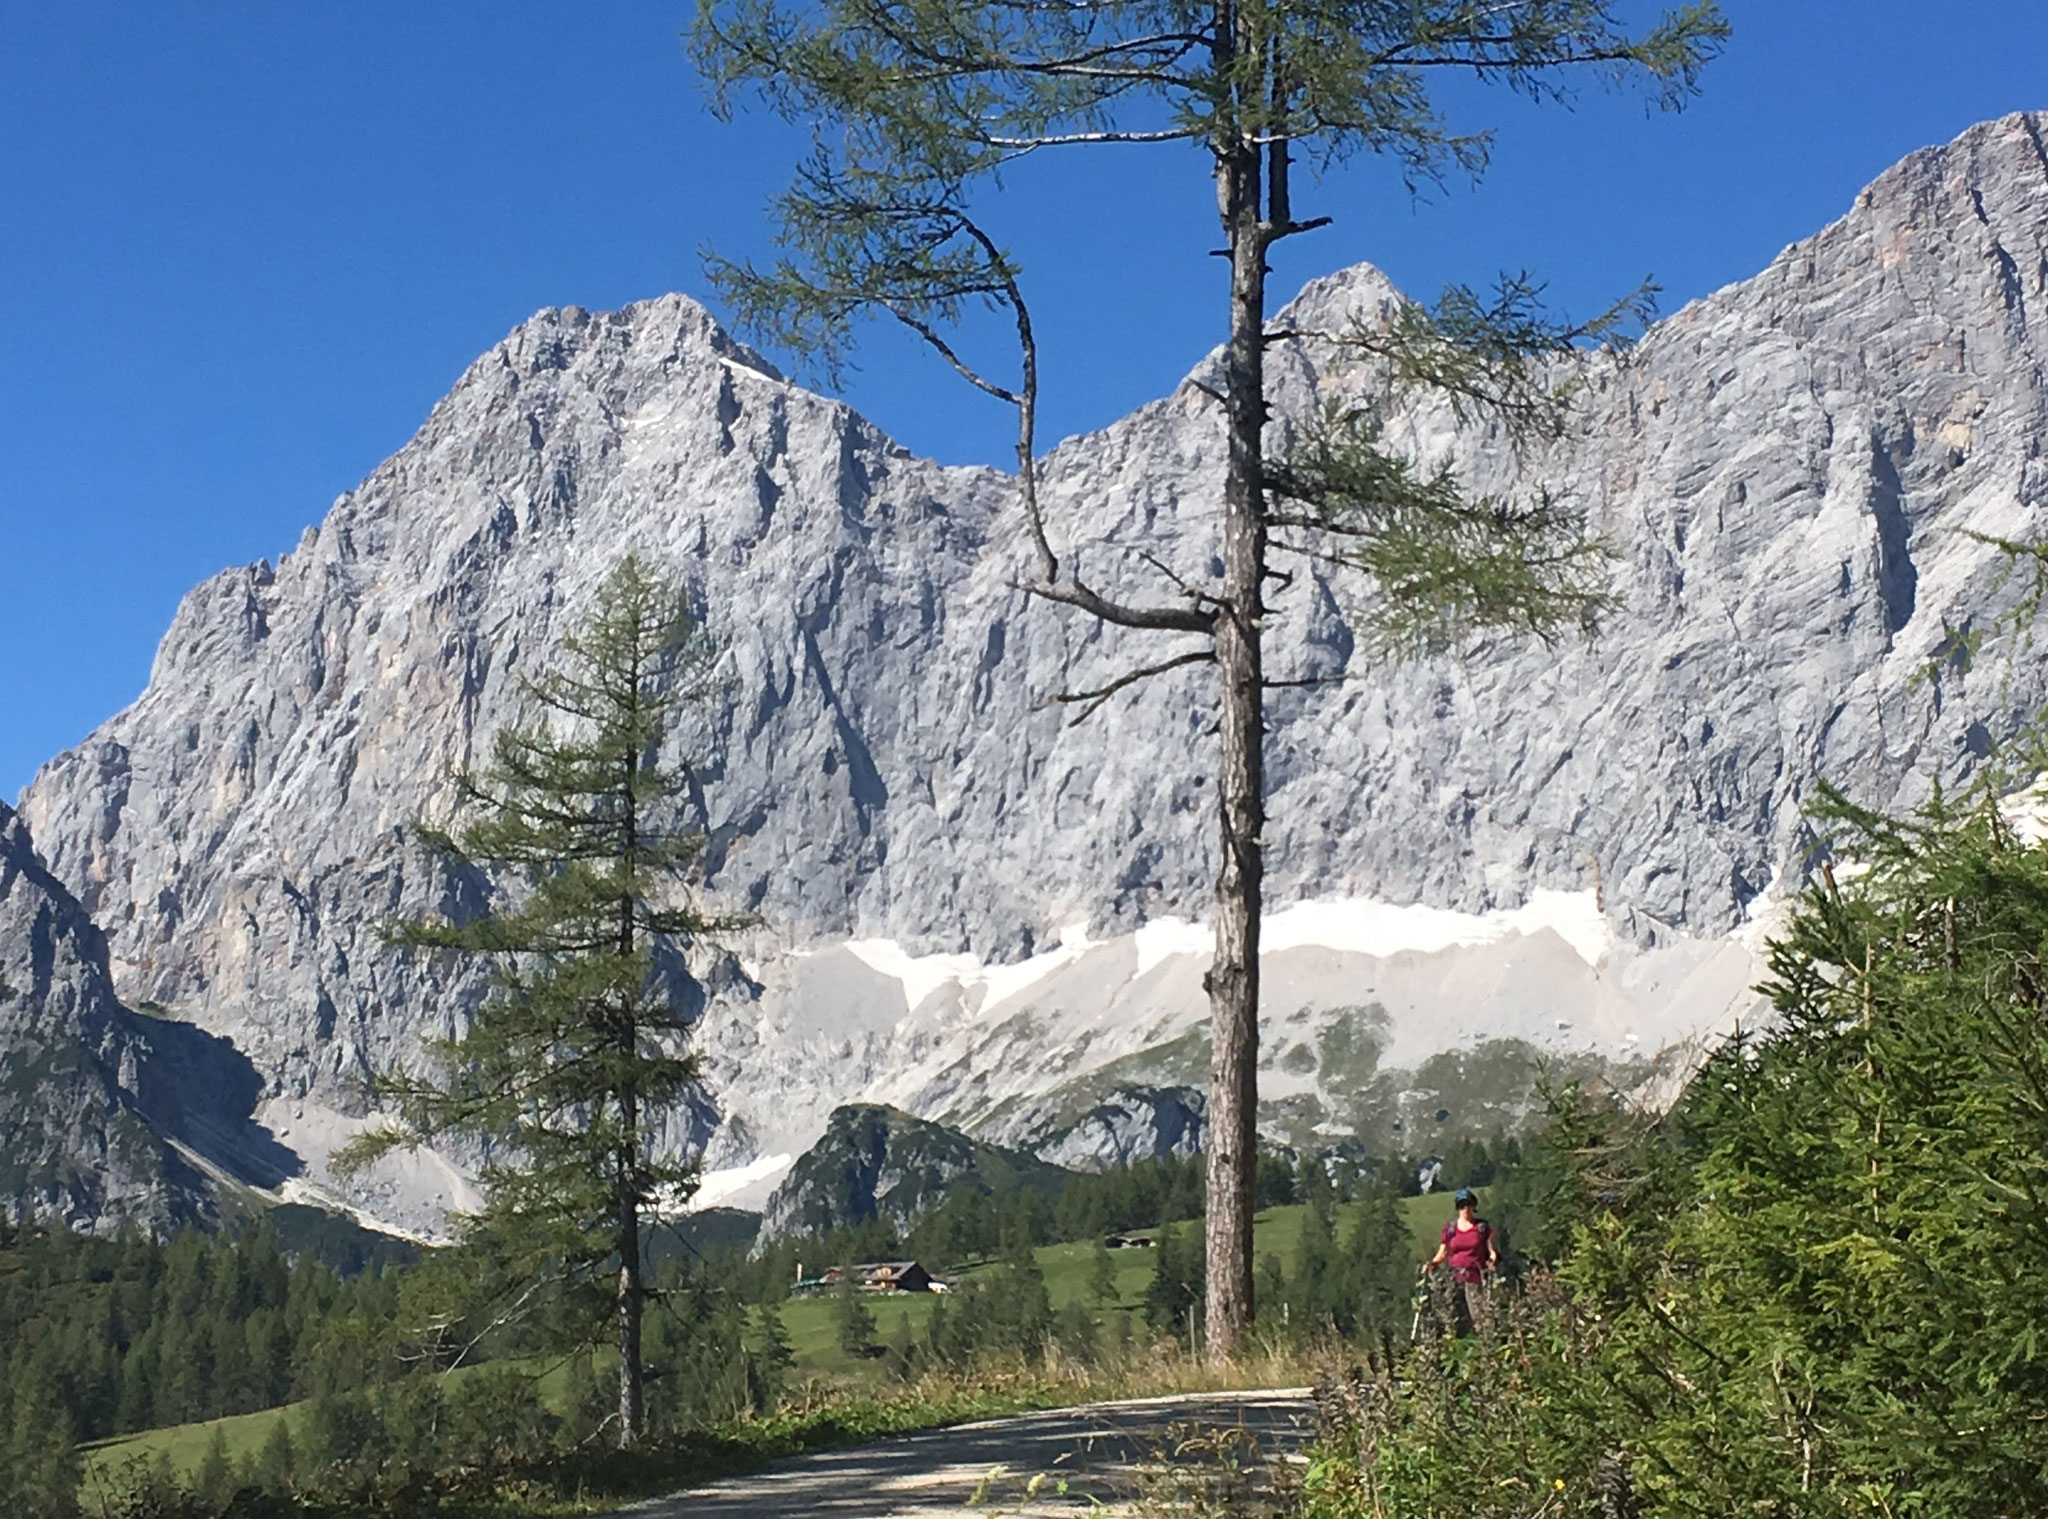 The three peaks: Torstein, Mitterspitz and Hoher Dachstein